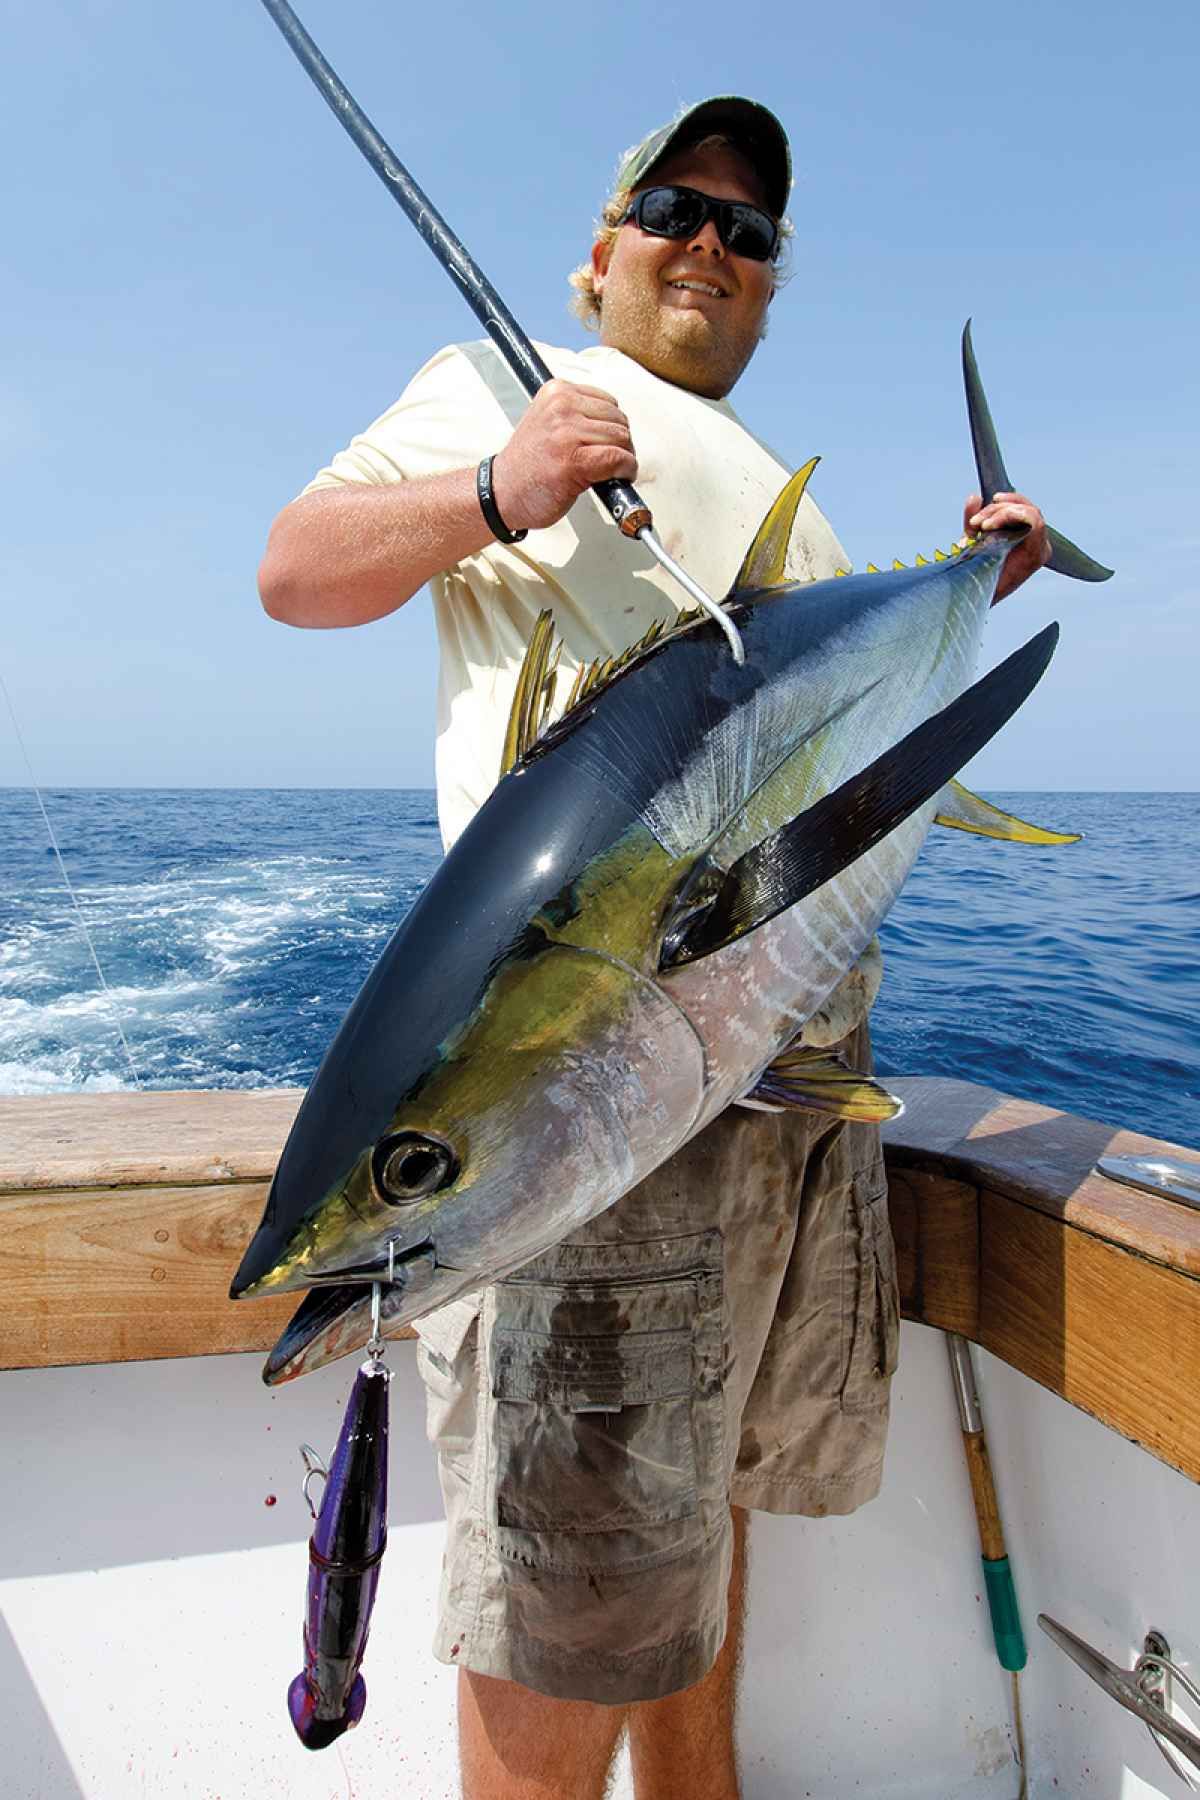 Tuna Fishing Tackle and Tips | Tuna Fishing | Pinterest | Fish ...